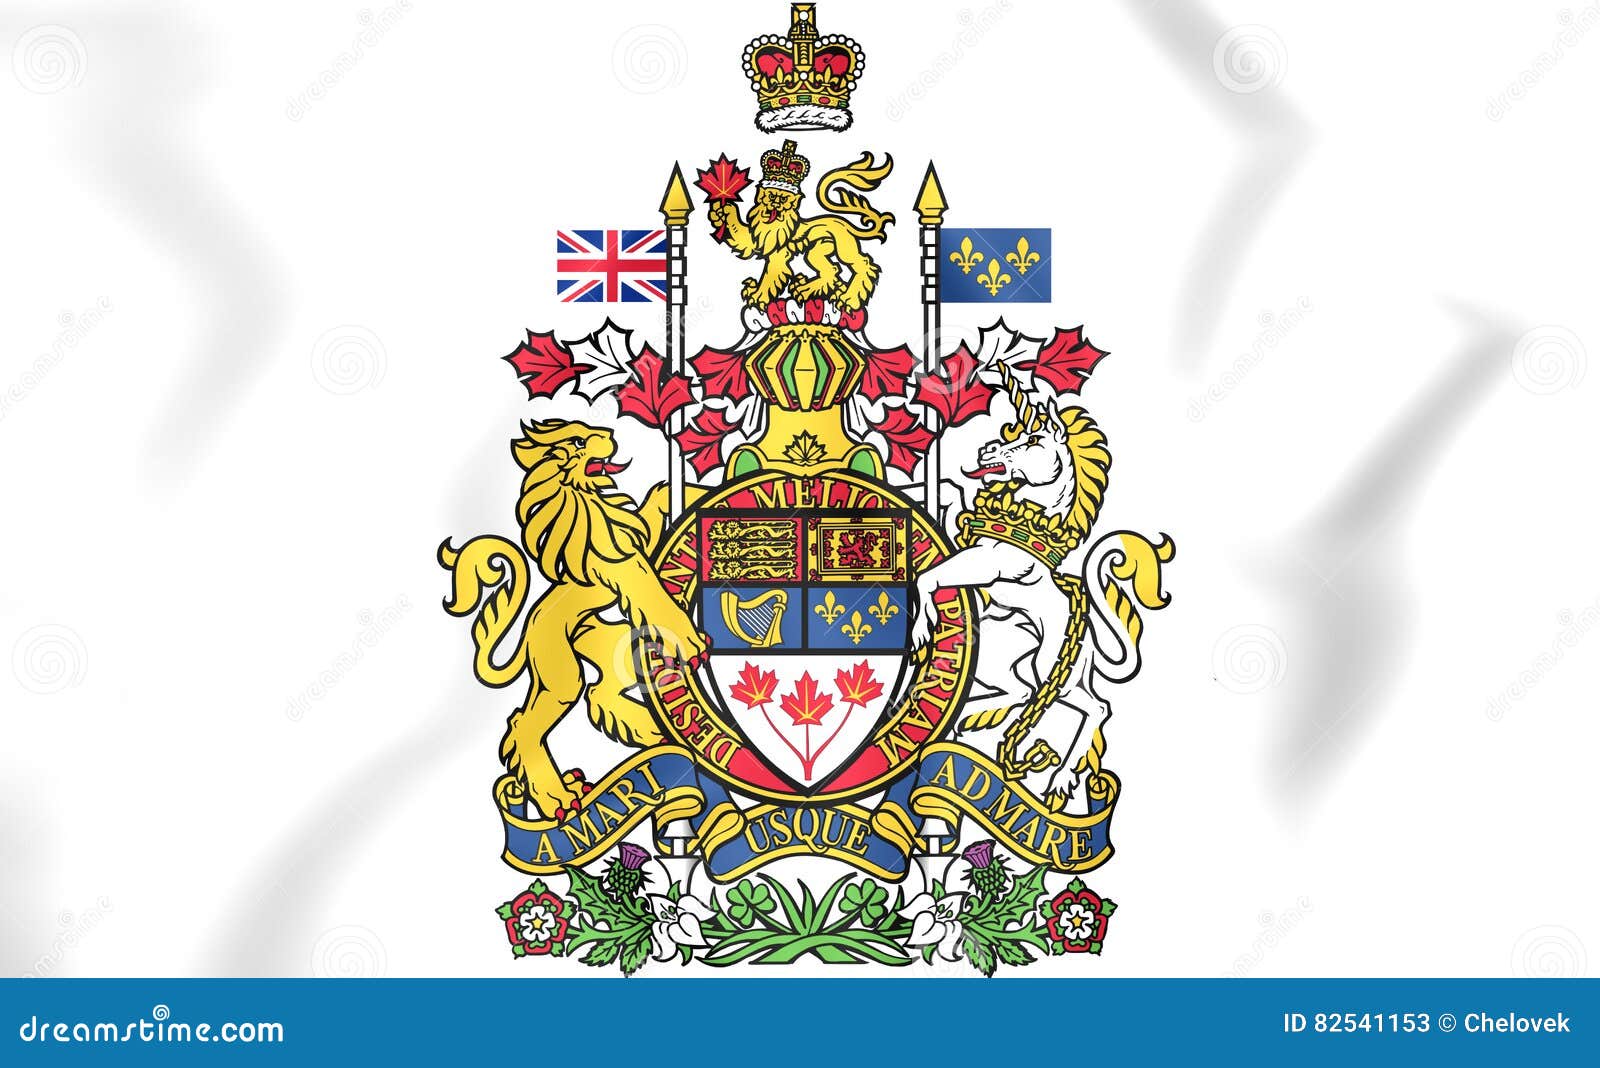 Канадский герб. Герб Канады. Канада флаг и герб. Флаг Канады герб Канады.